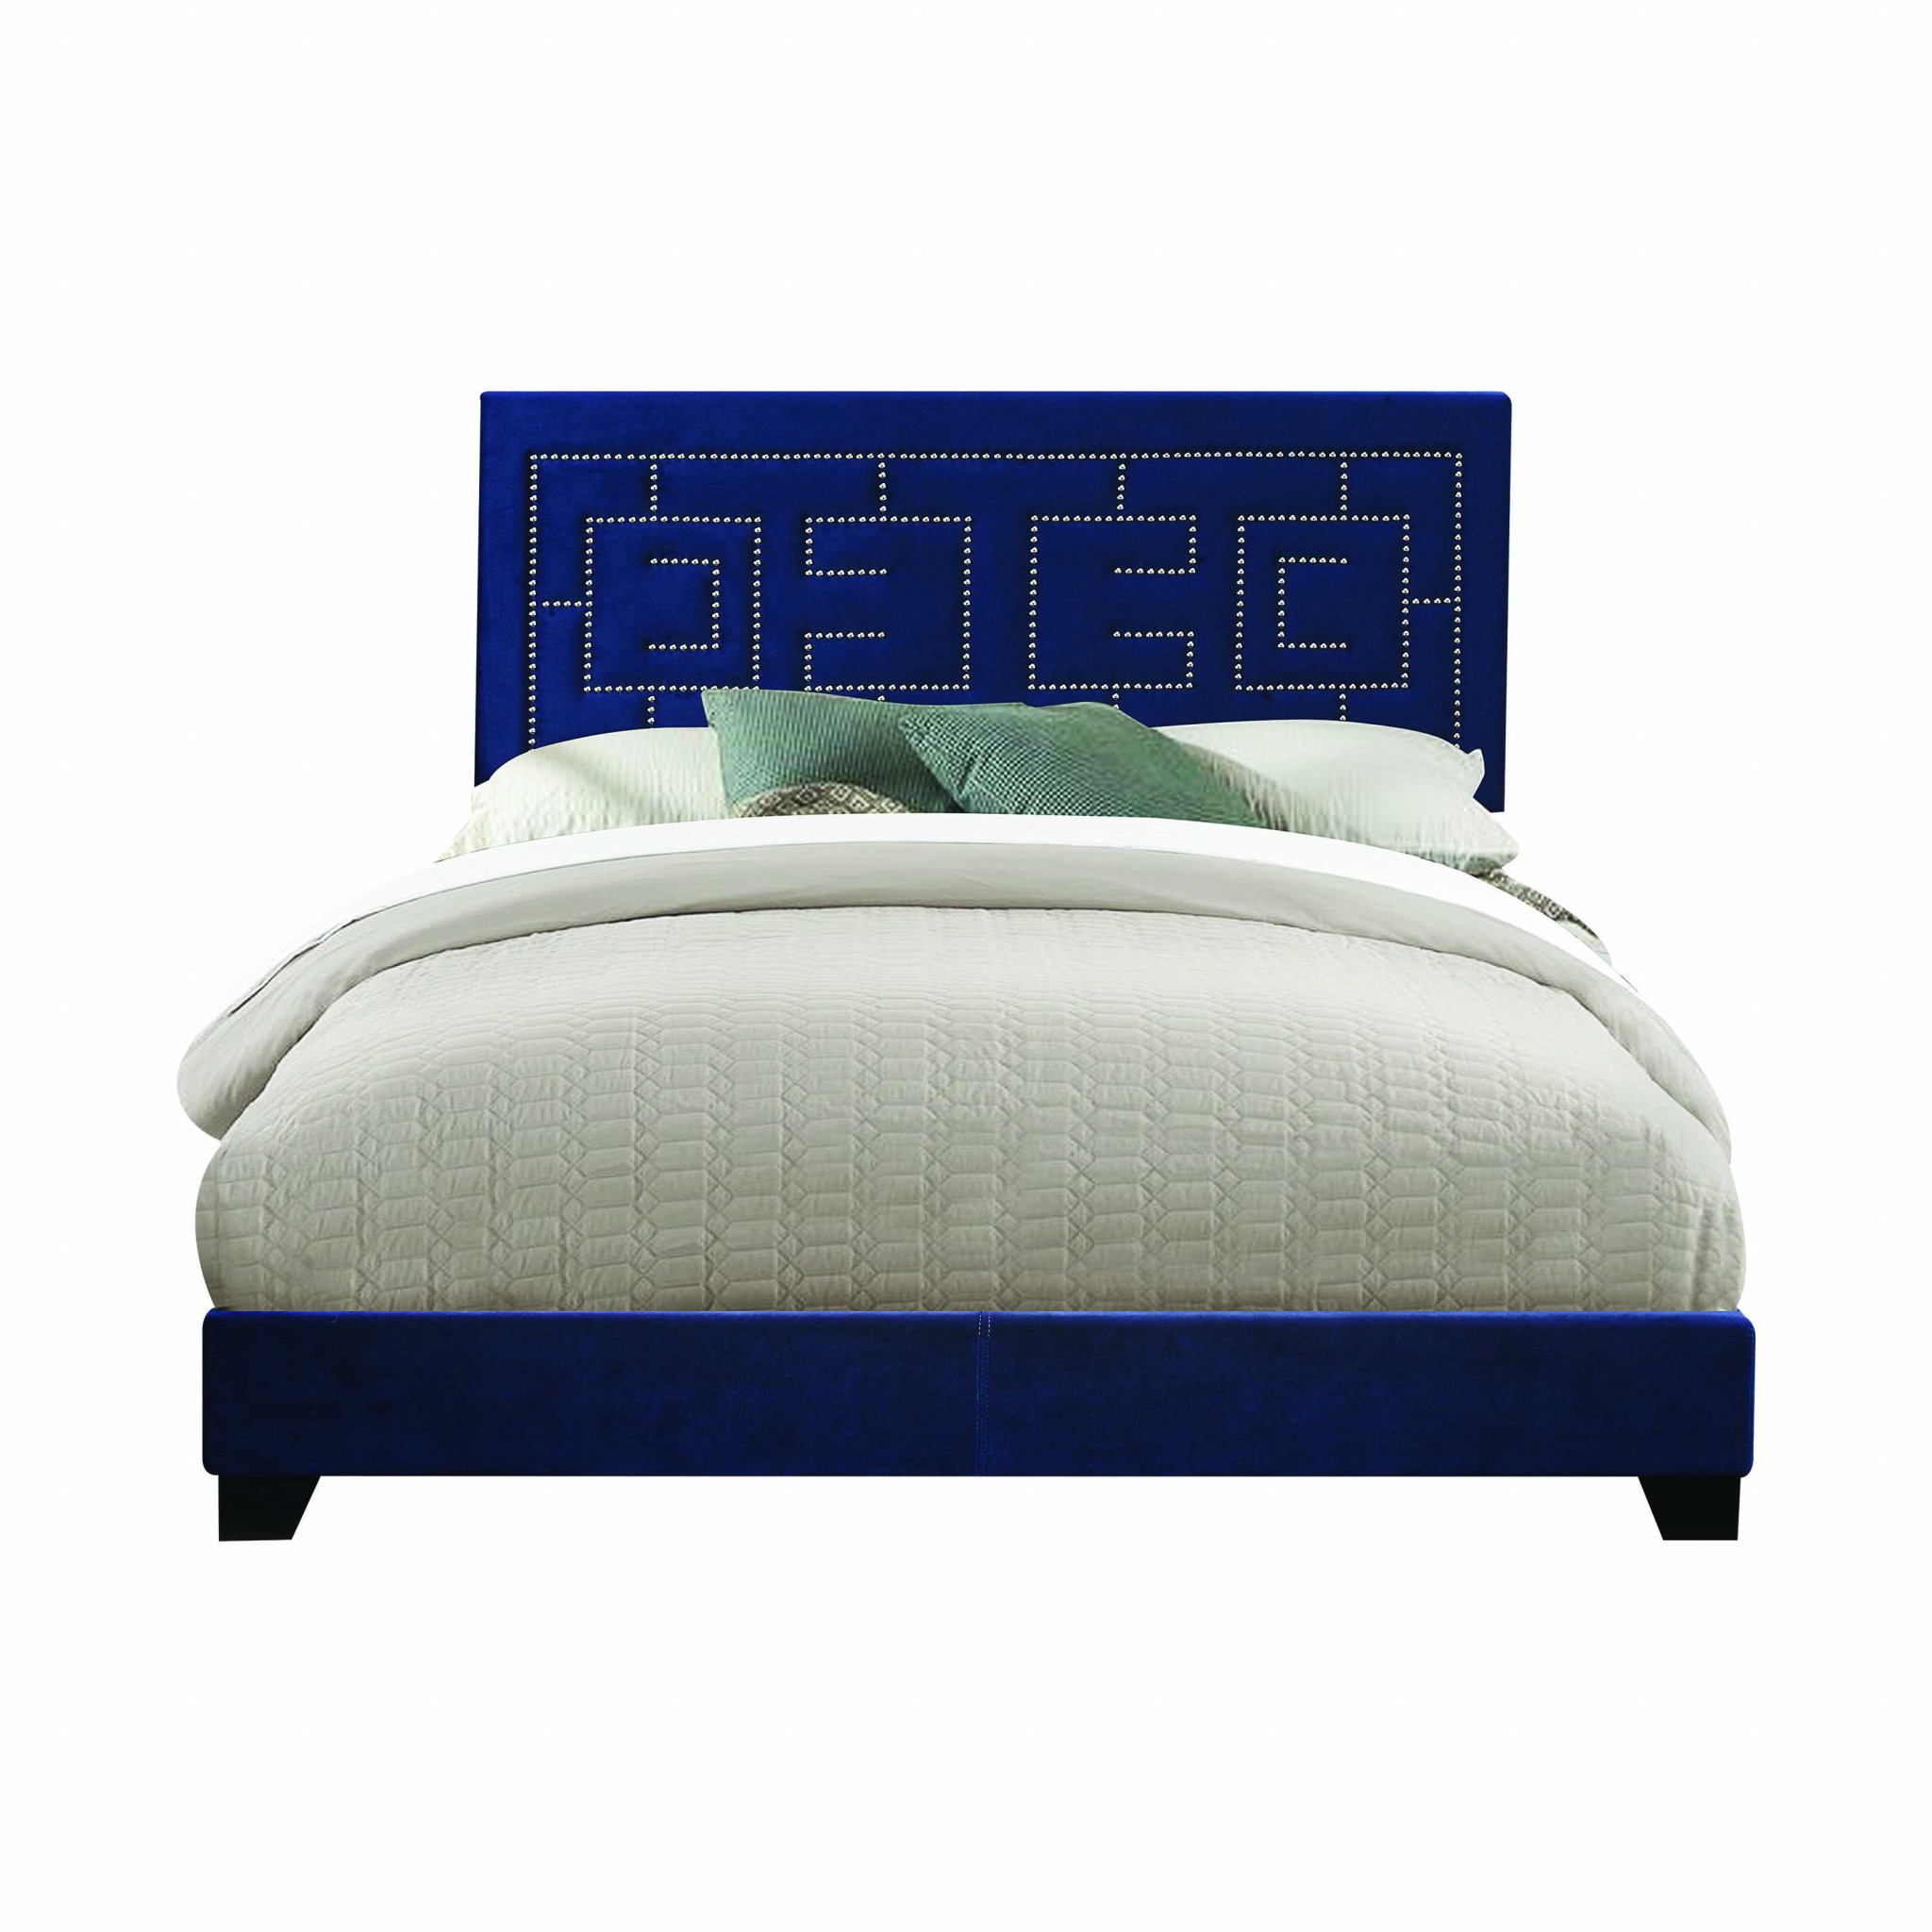 64" X 86" X 50" Dark Blue Velvet Upholstered Bed Wood Leg Queen Bed